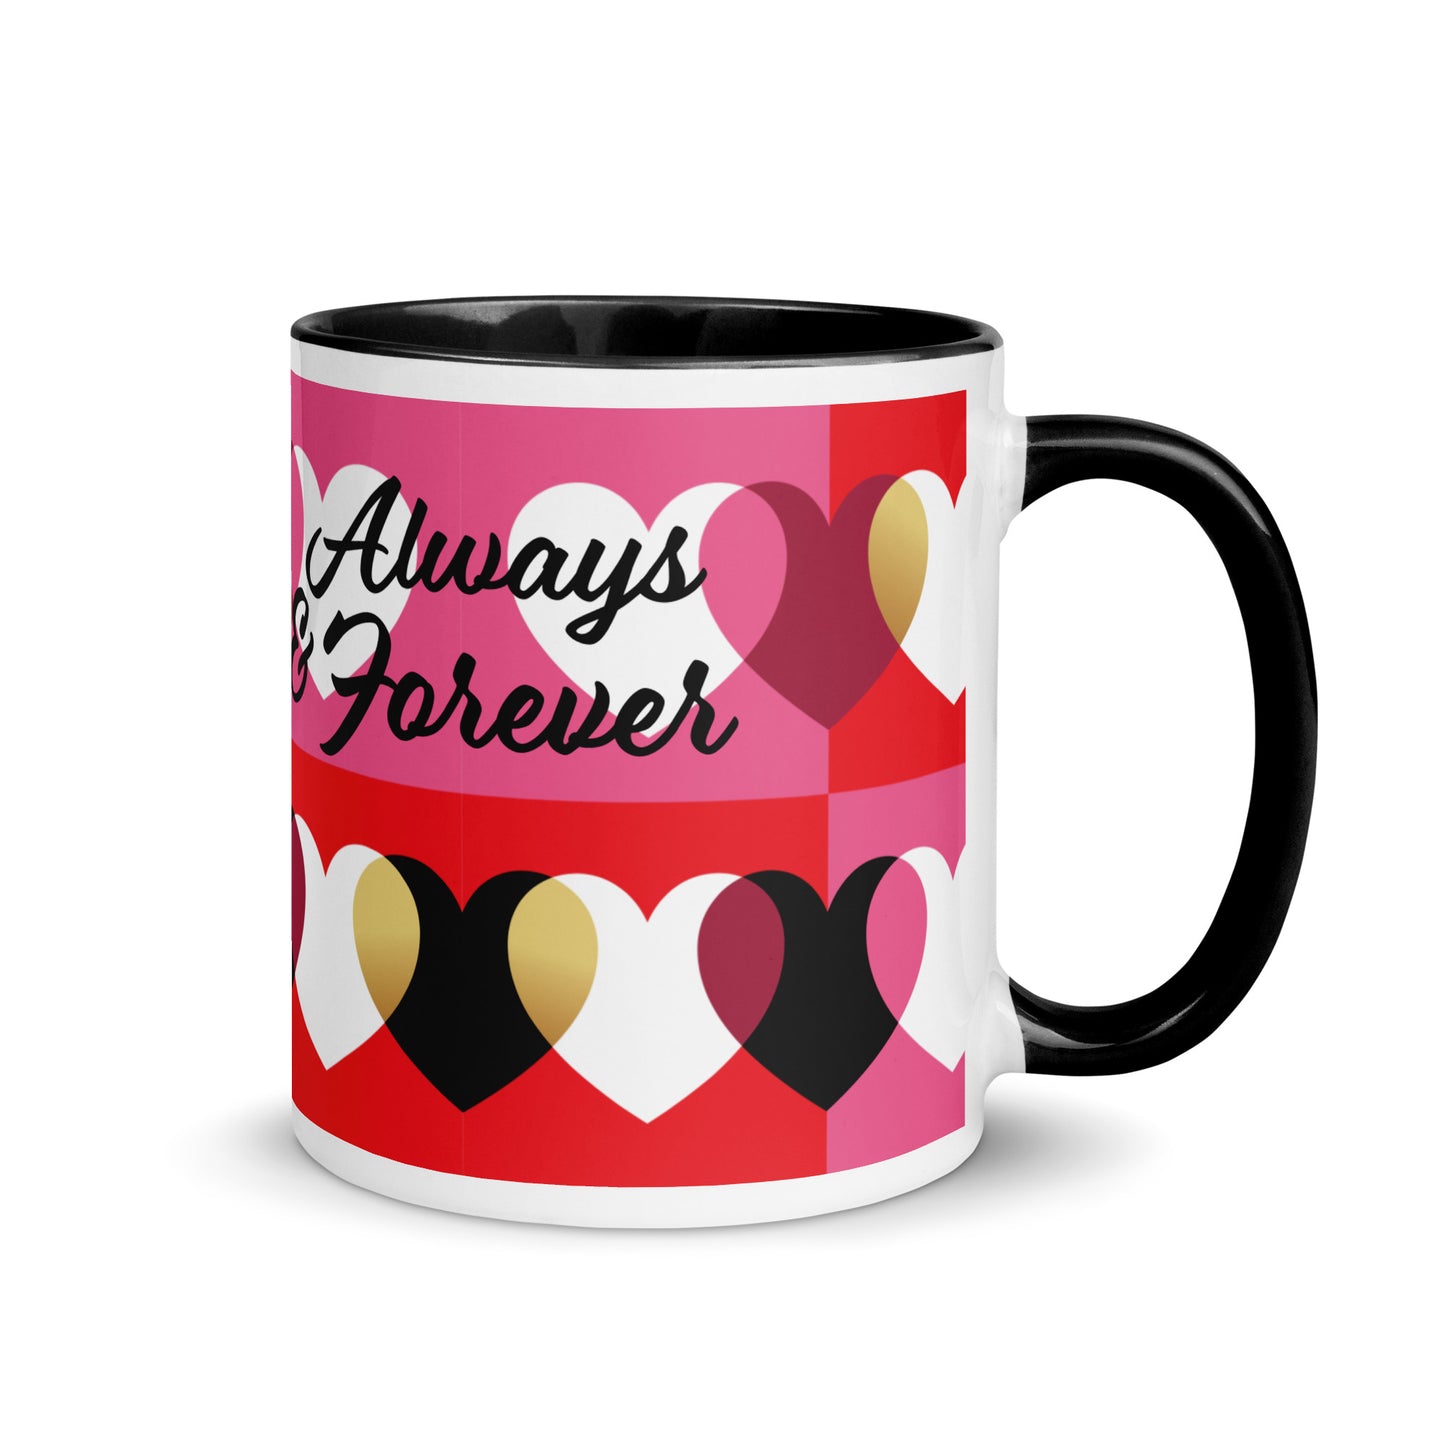 Tasse Always & Forever avec des coeurs, noir, rouge